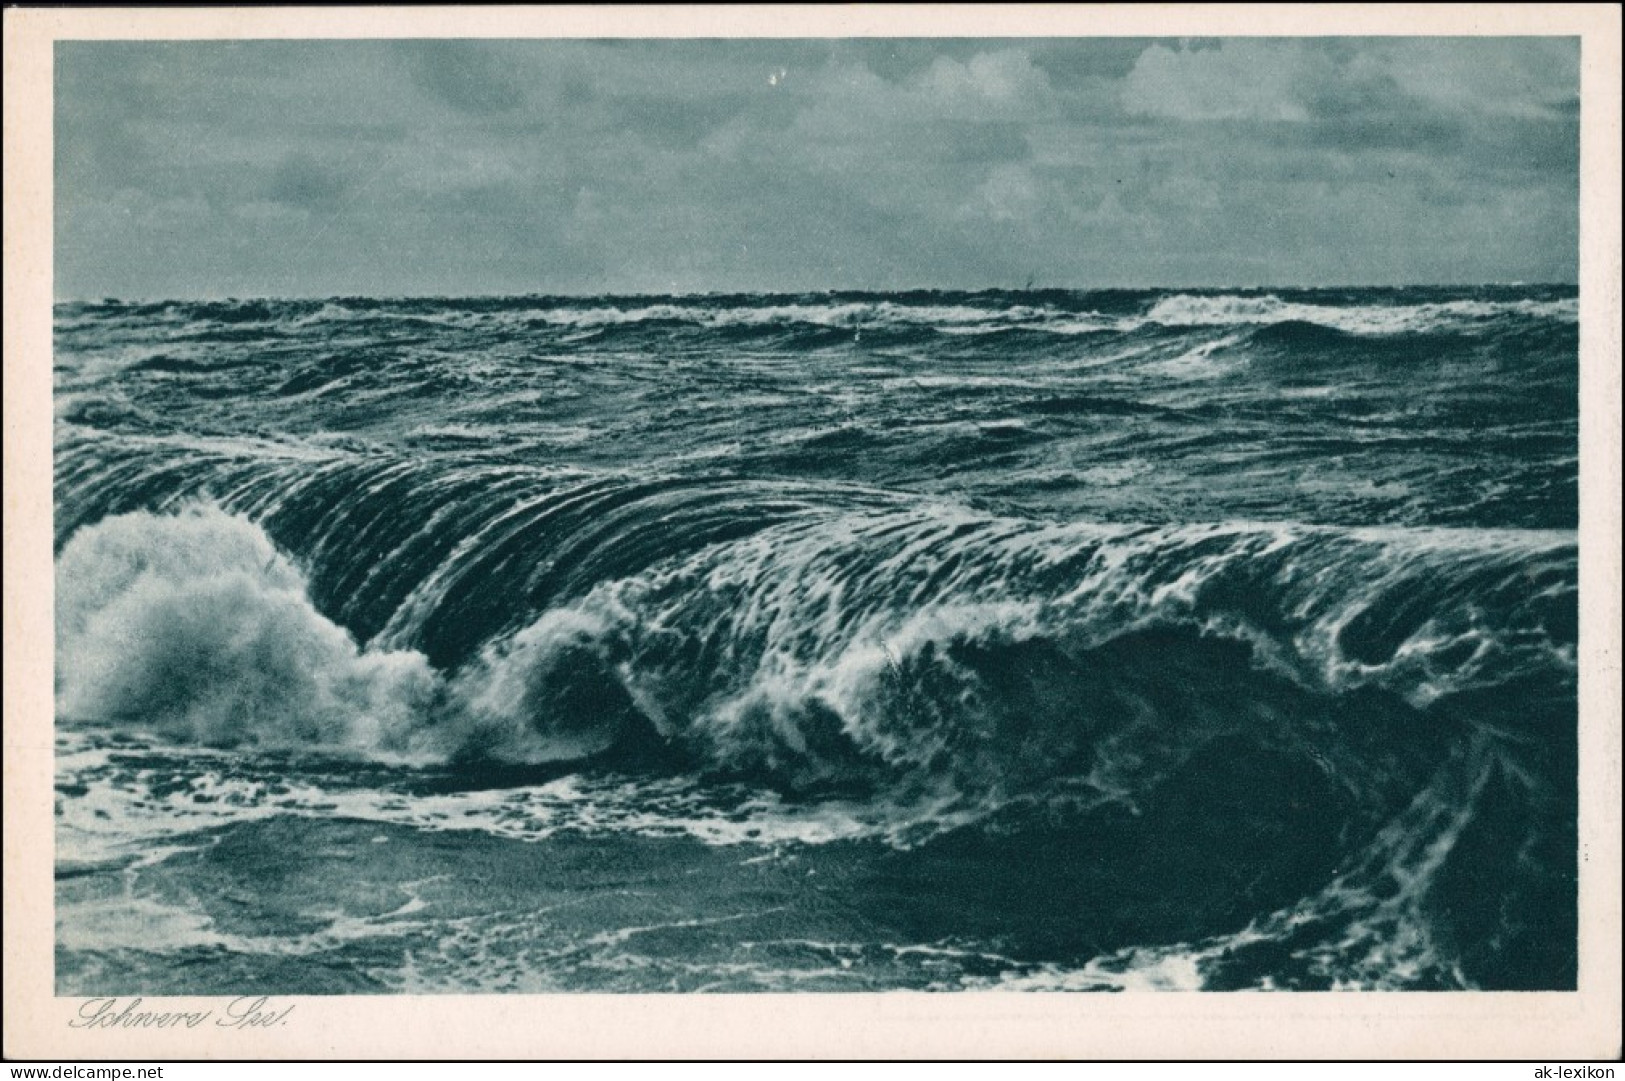 Postcard Ostpreußen (allgemein) Die Ostsee Bei Sturm Ostpreußen 1928 - Ostpreussen